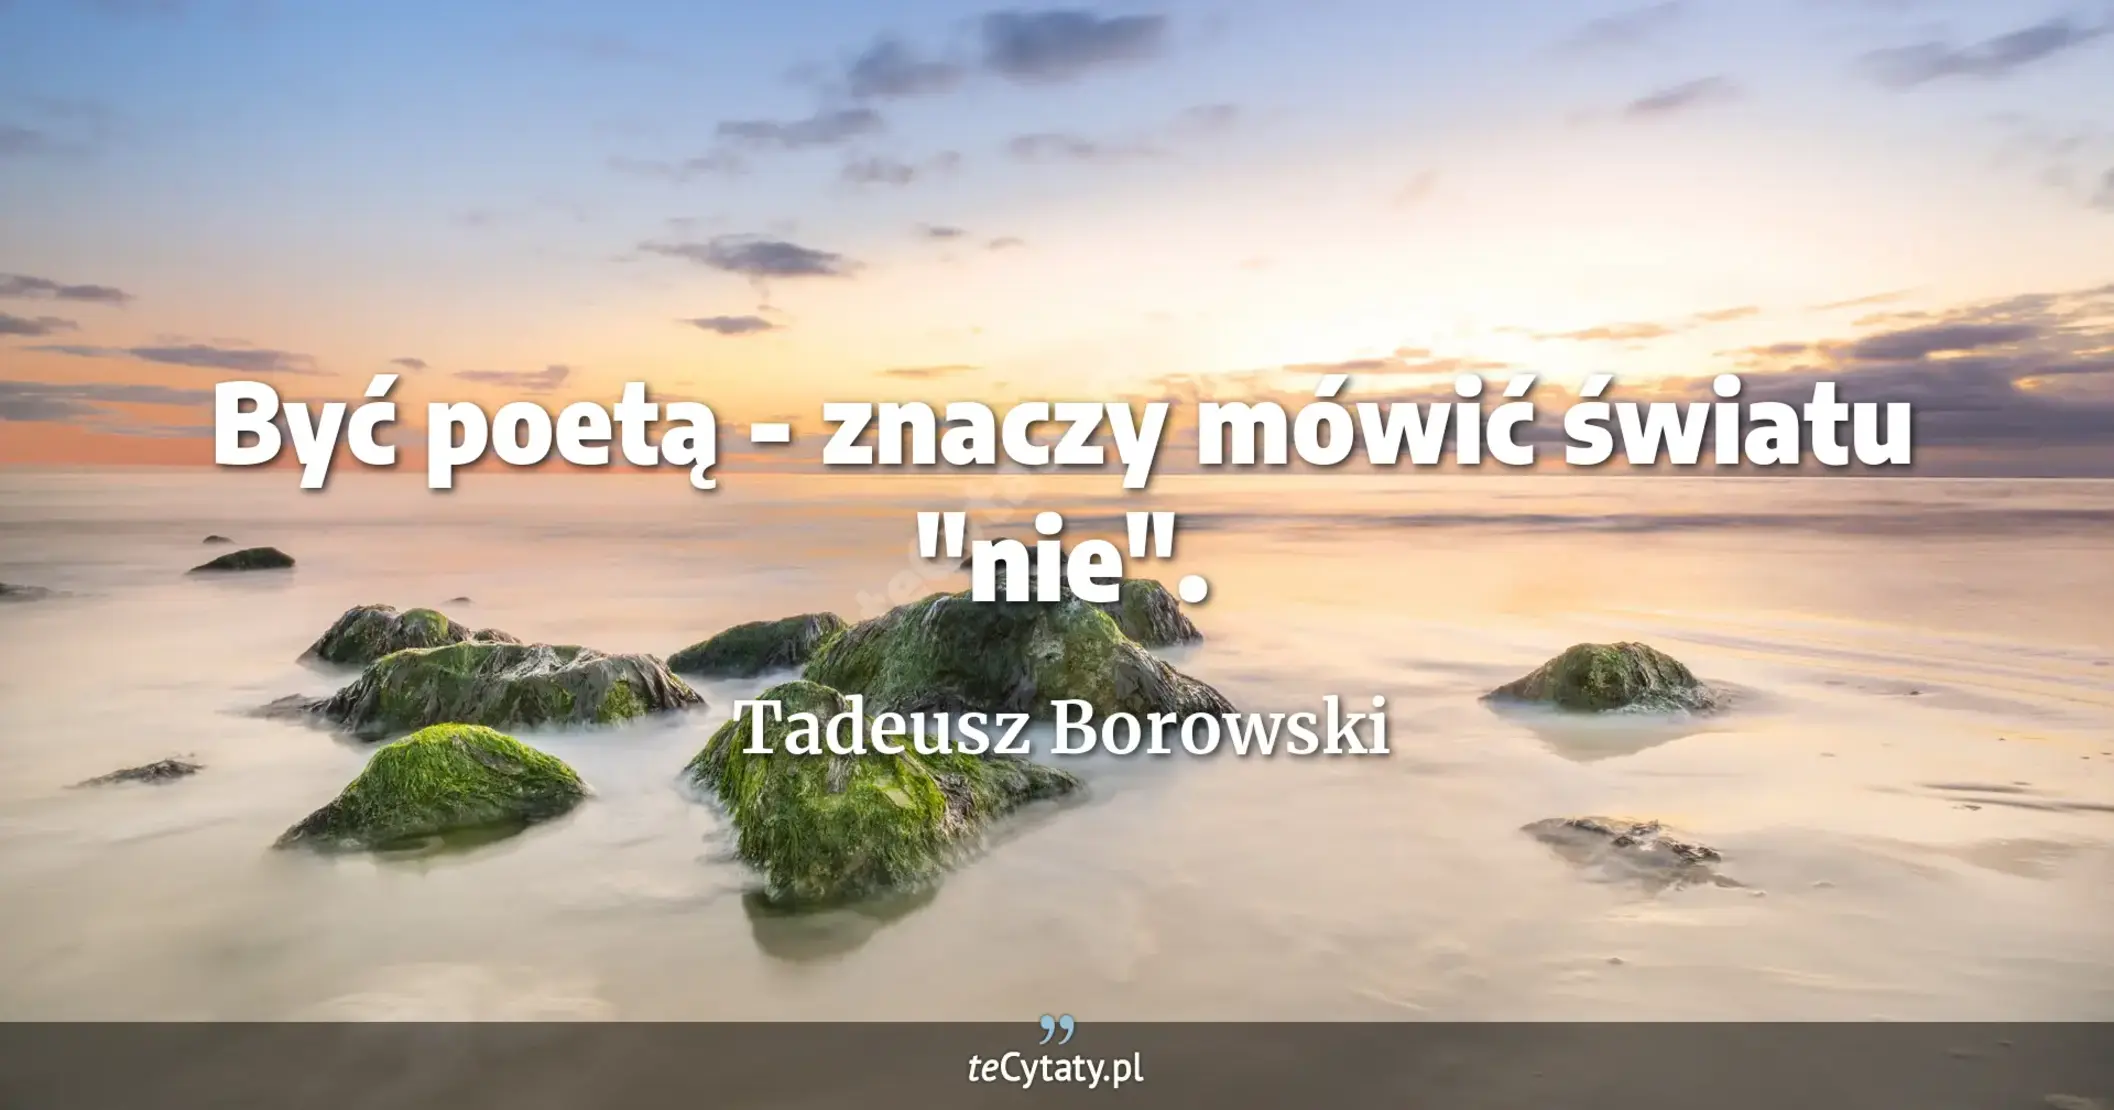 Być poetą - znaczy mówić światu "nie". - Tadeusz Borowski